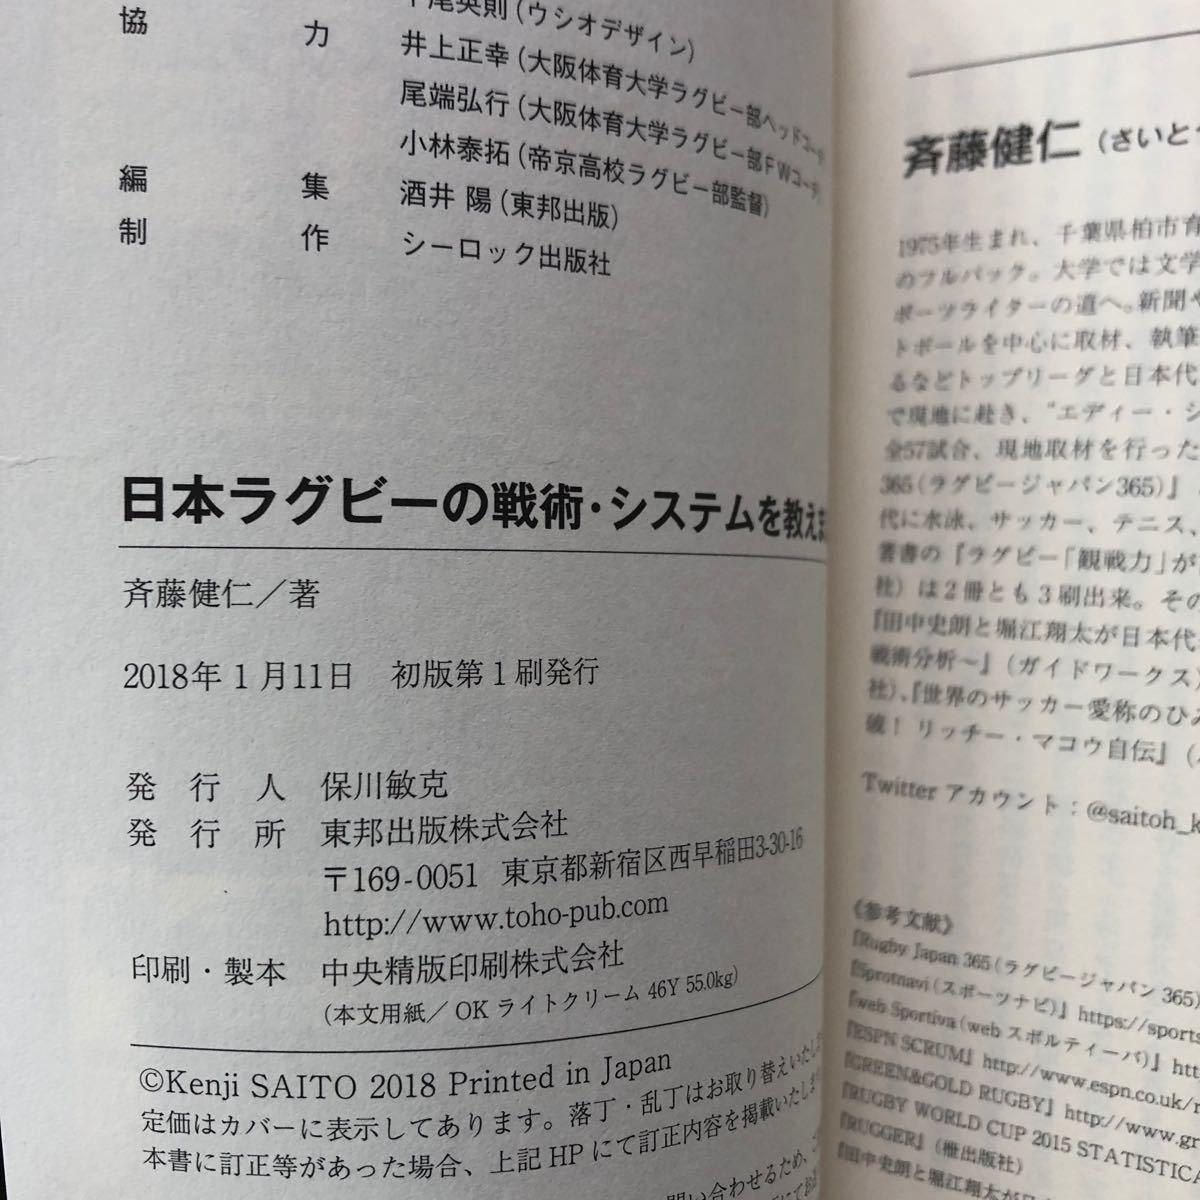 日本ラグビーの戦術システムを教えましょう 「観戦力」 が高まる本／斉藤健仁 (著者)